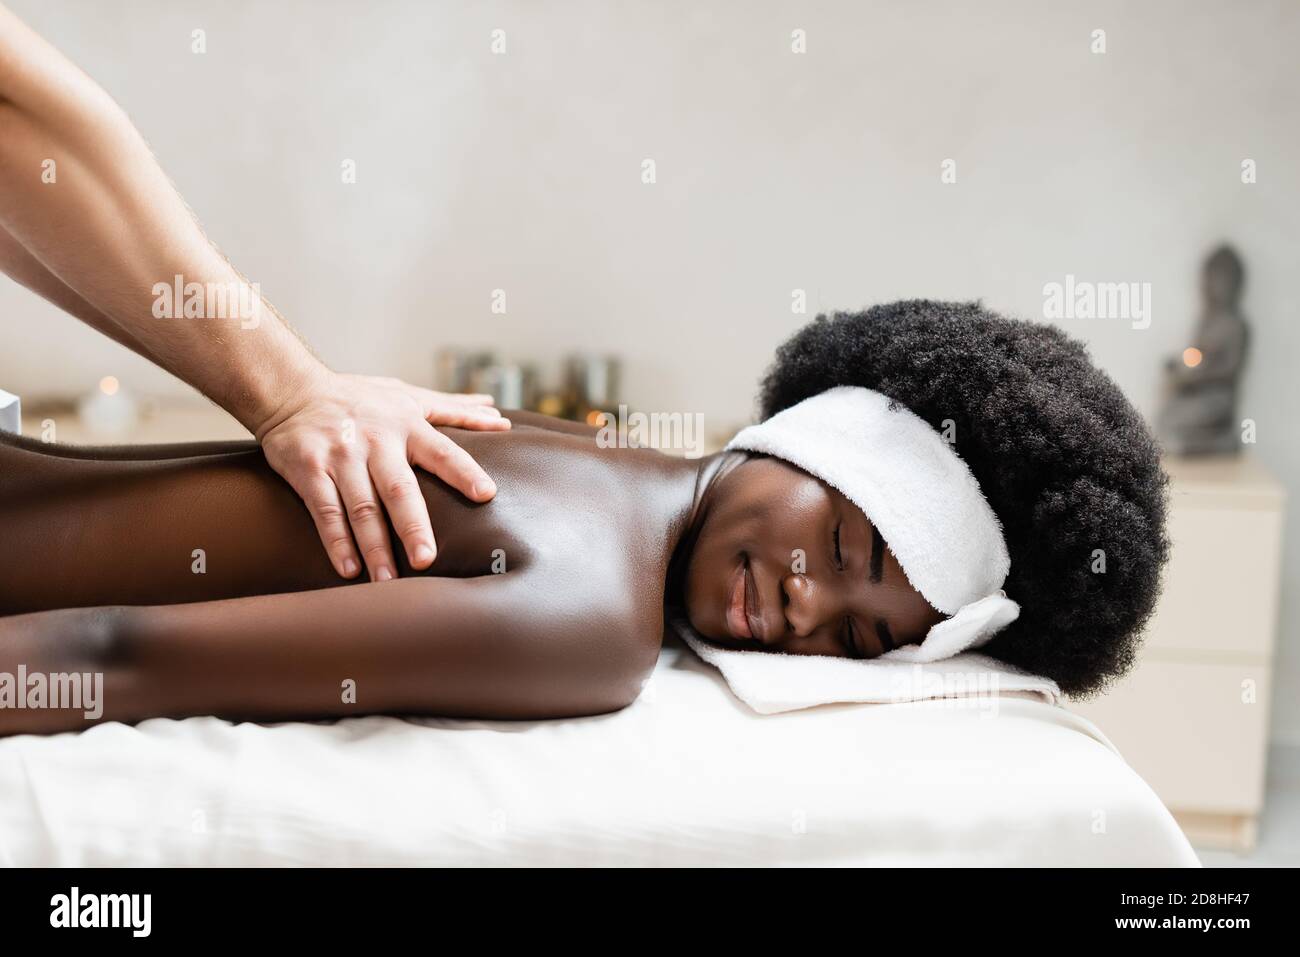 African girl massage